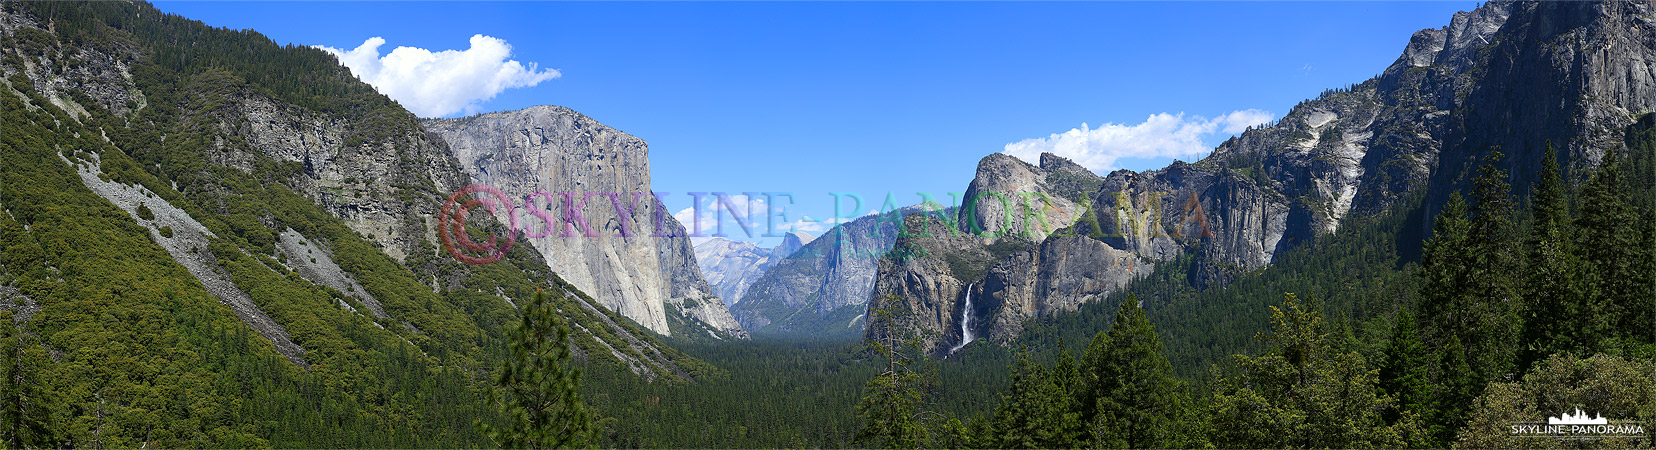 Panorama vom Aussichtspunkt Tunnel View in das Yosemite Tal, mit Blick auf El Capitan an der linken Seite und in der Bildmitte ist der Half Dome zu sehen...